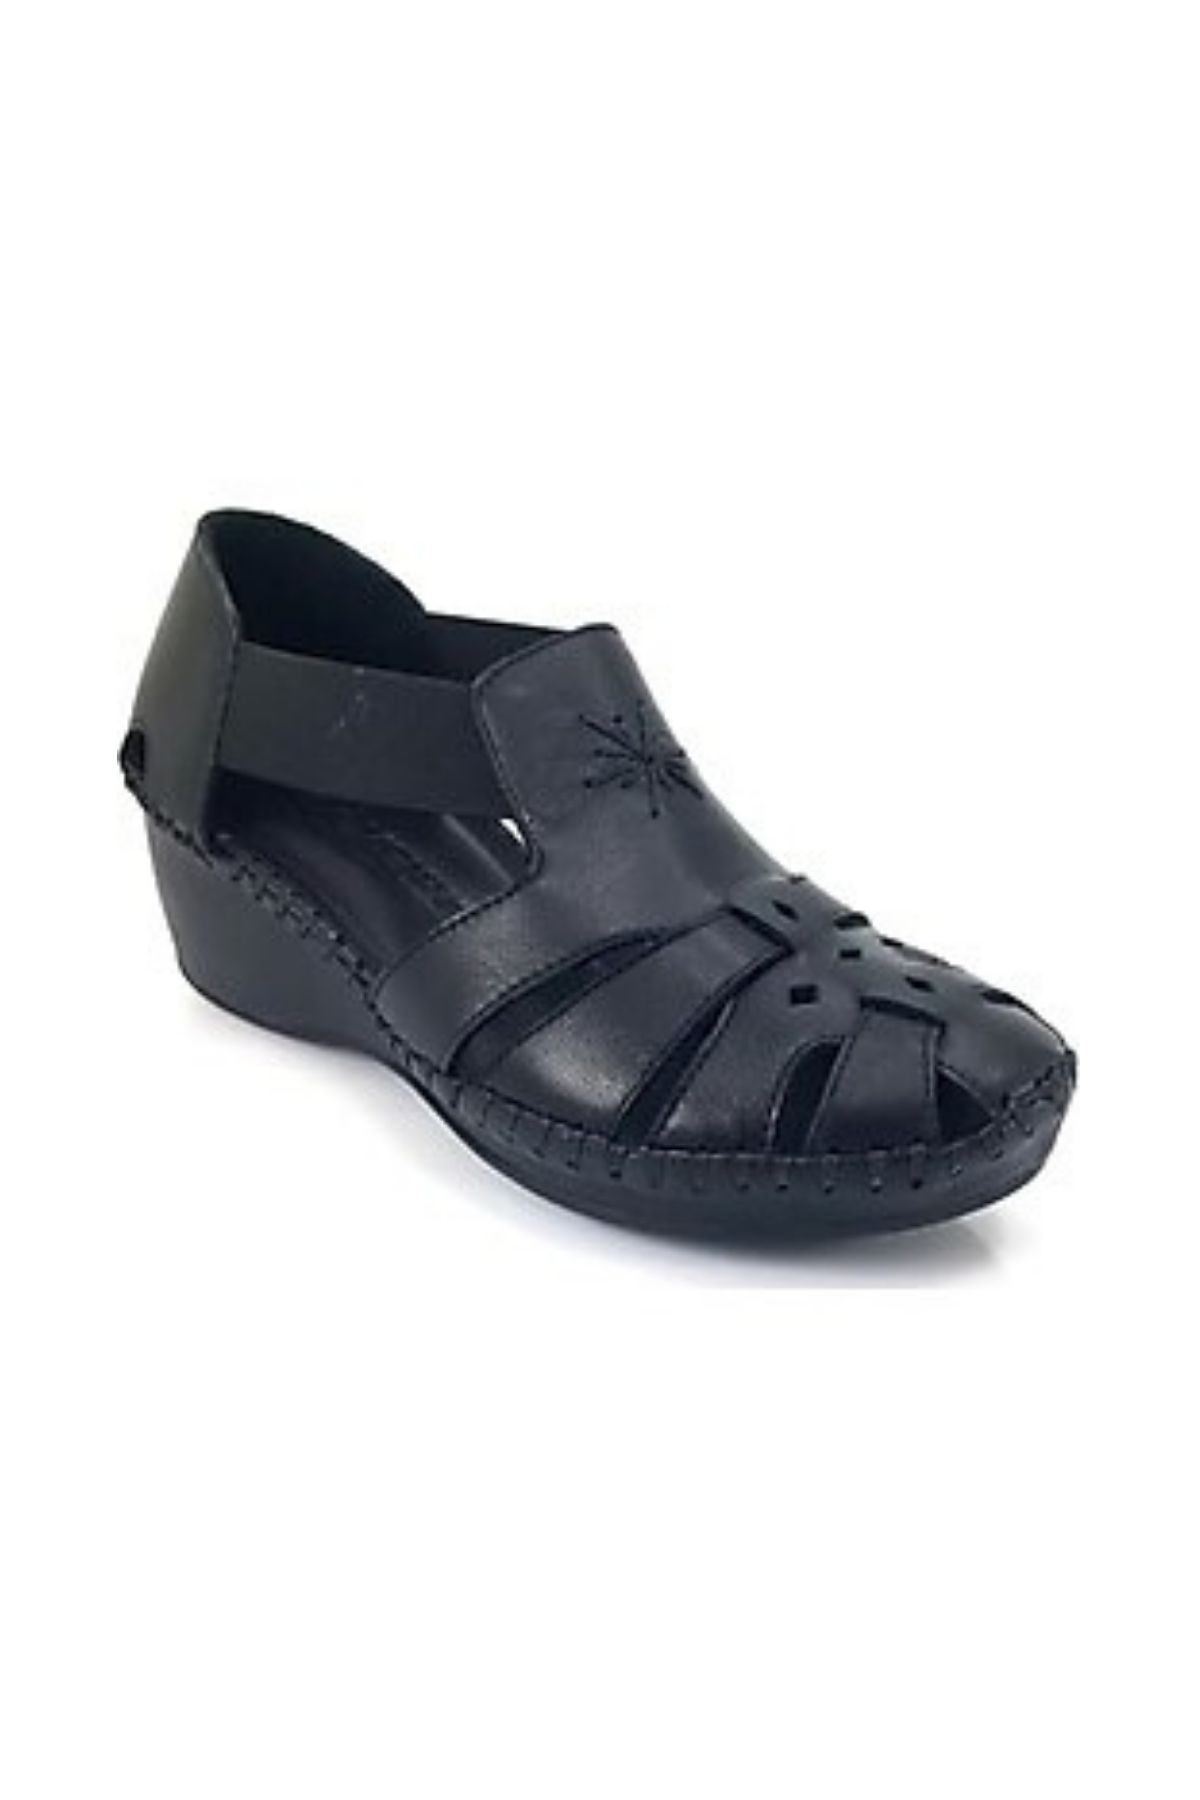 Kadın Comfort Deri Sandalet Lacivert 18793056